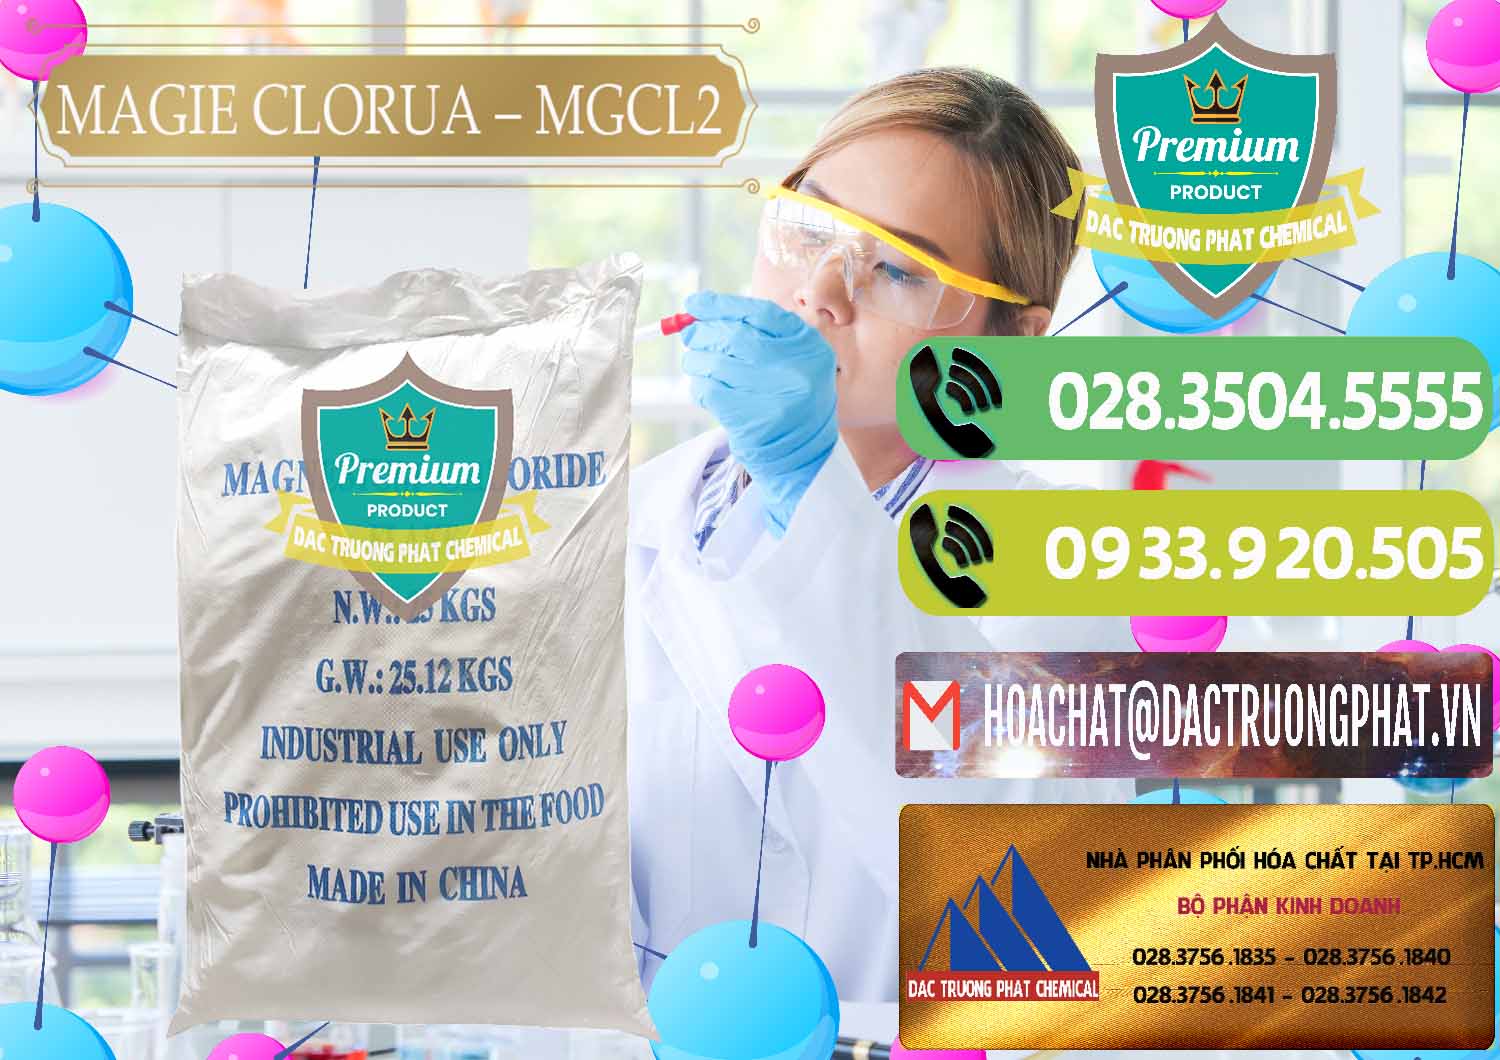 Cty kinh doanh ( bán ) Magie Clorua – MGCL2 96% Dạng Vảy Trung Quốc China - 0091 - Chuyên bán - phân phối hóa chất tại TP.HCM - hoachatmientay.vn